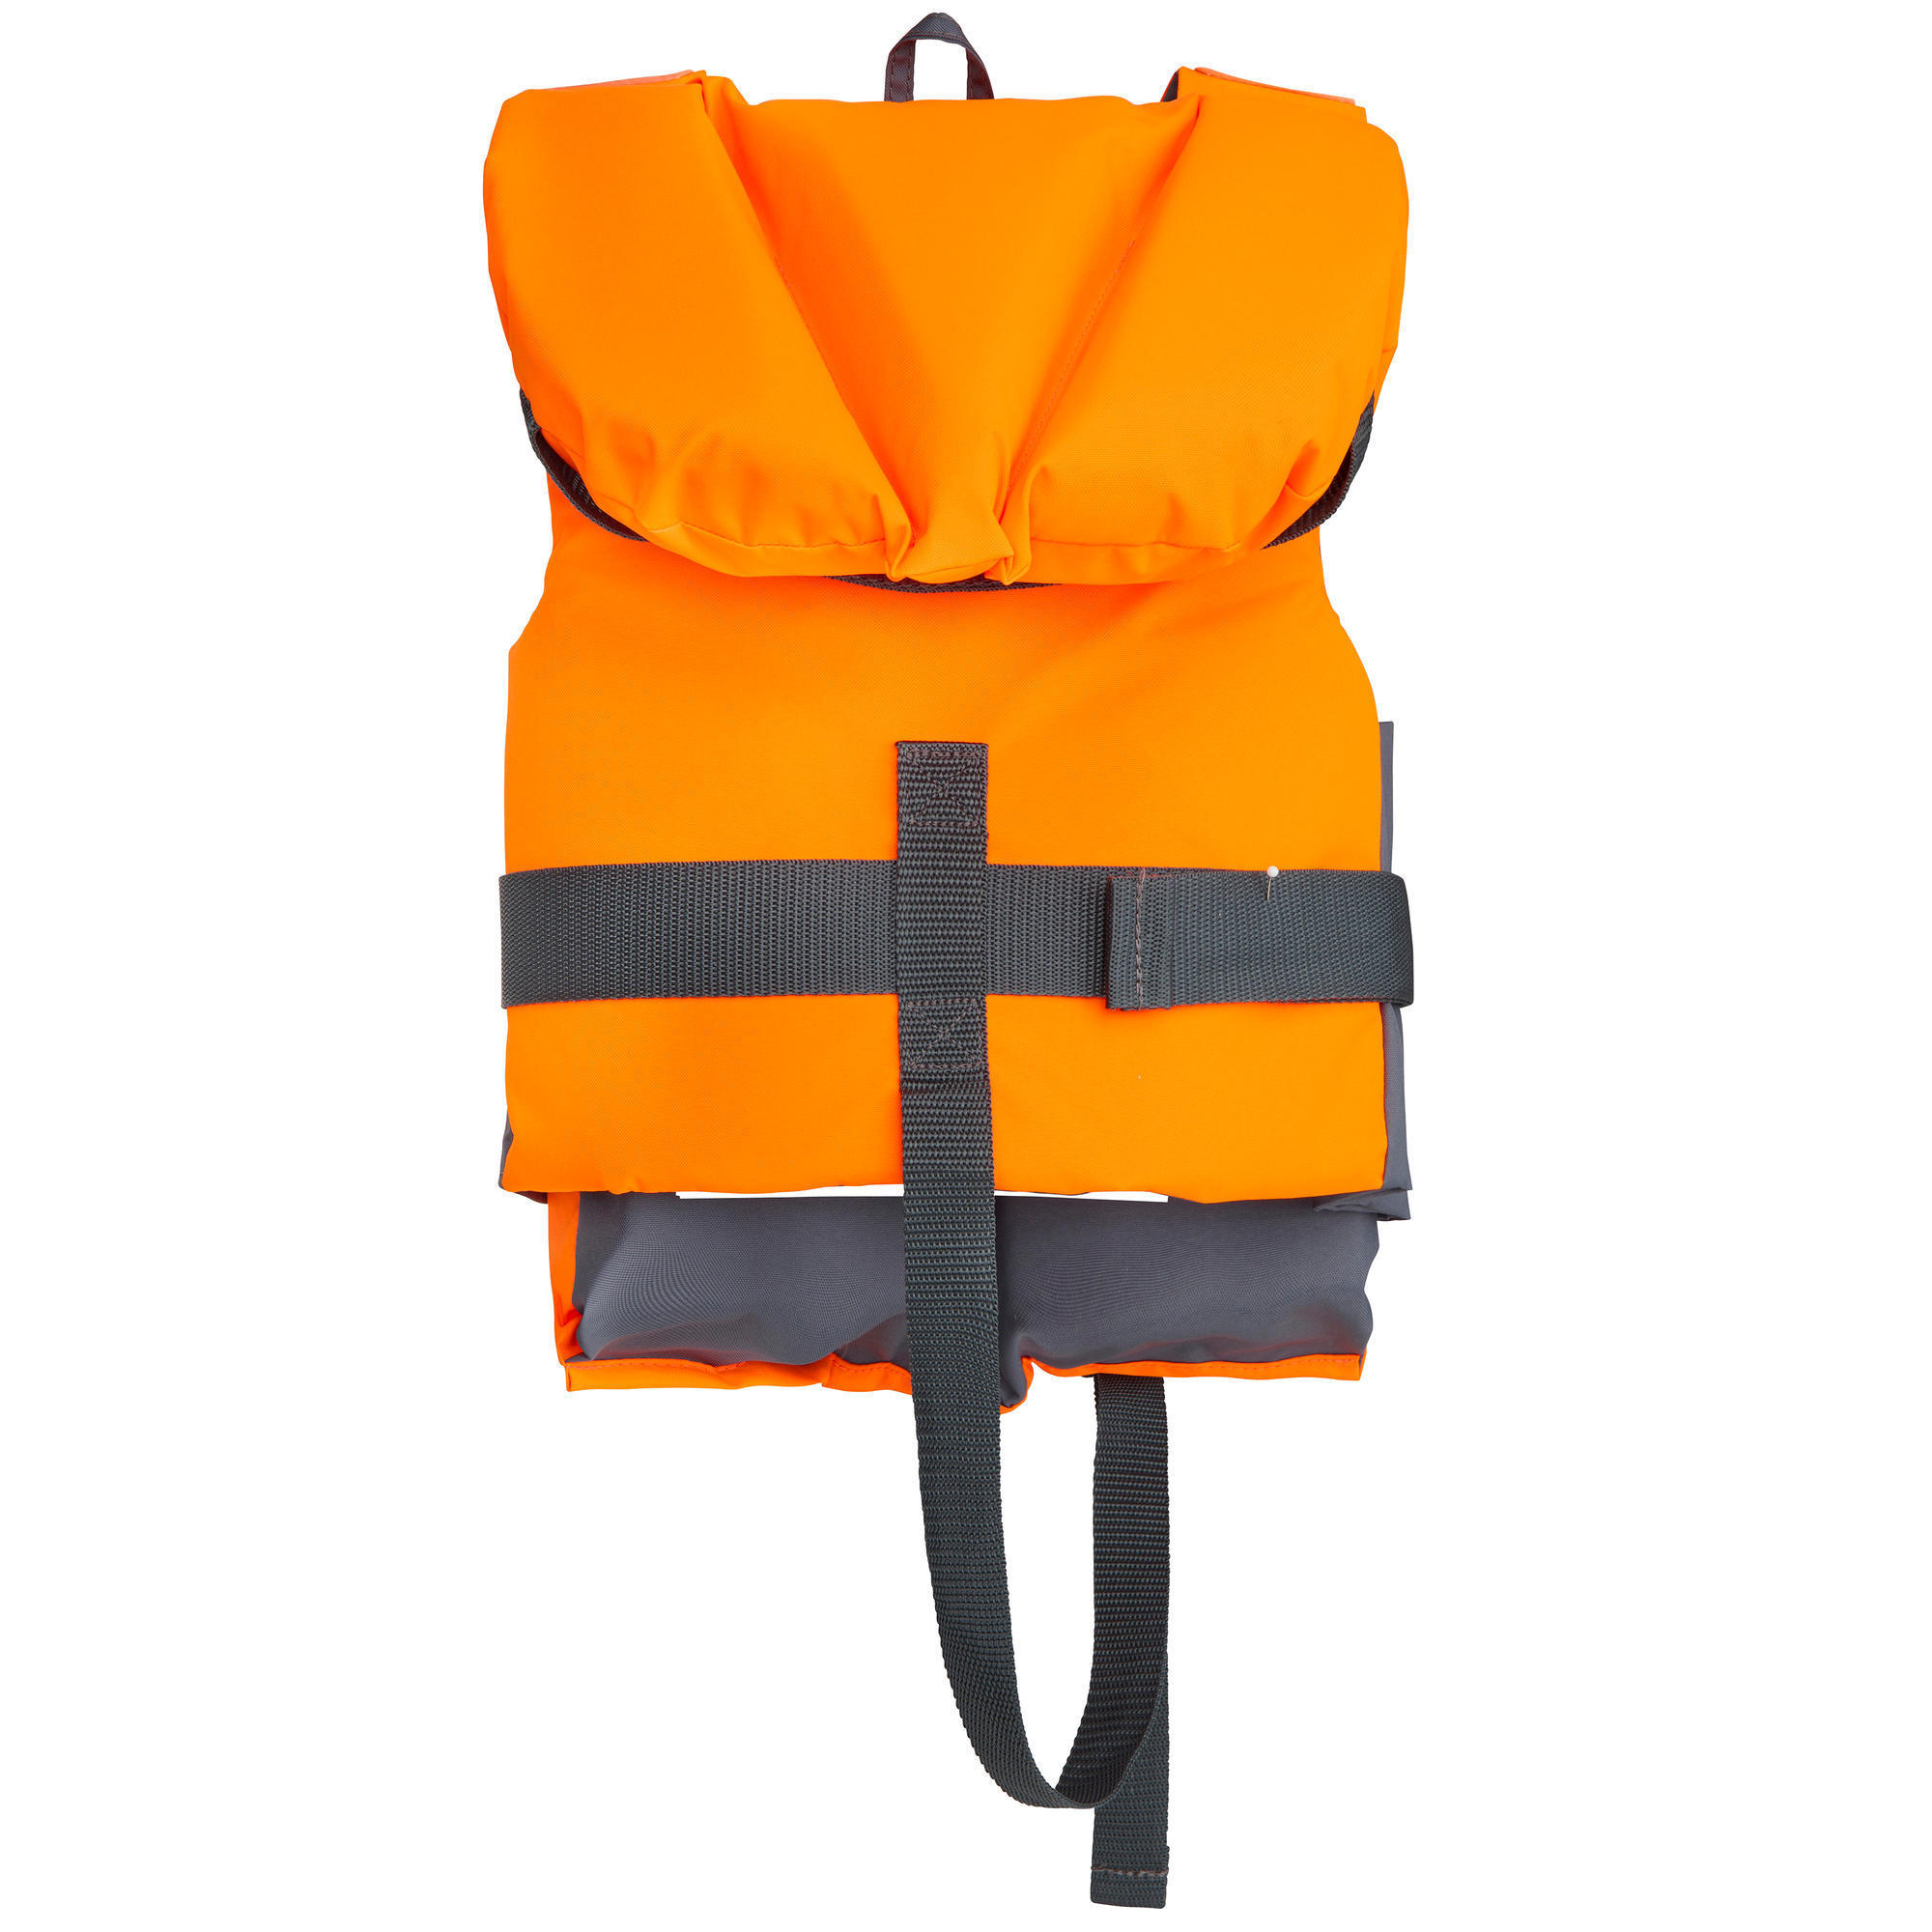 children's life jackets decathlon